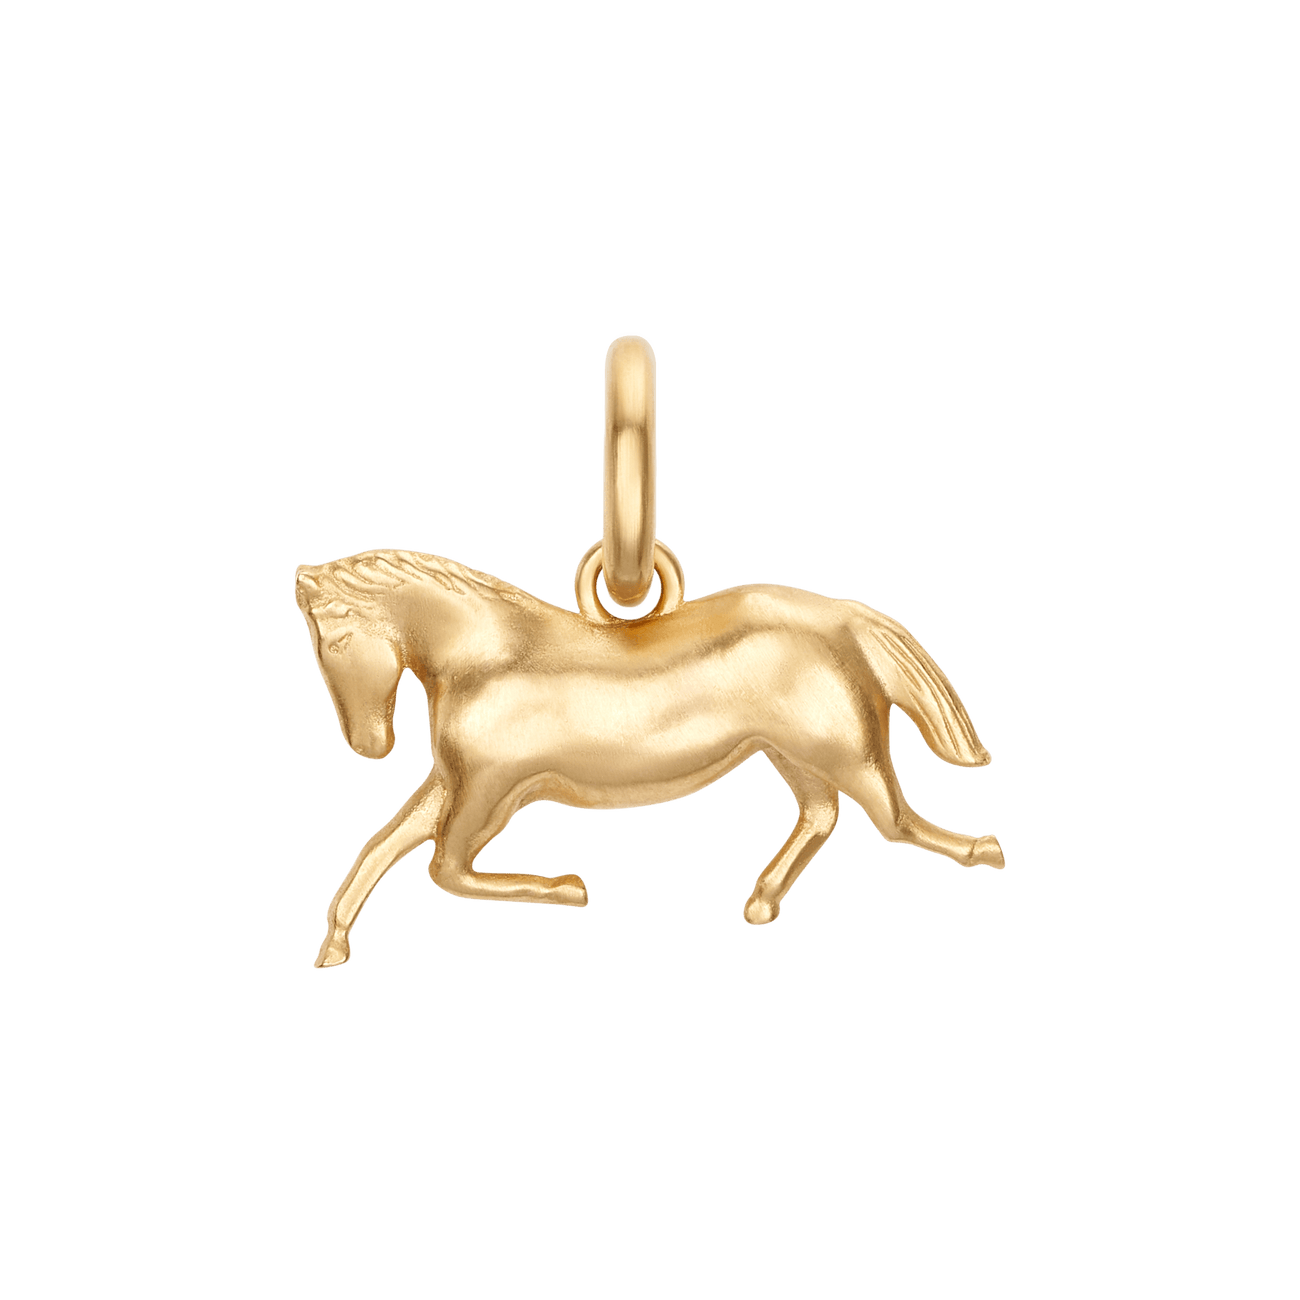 Dimensional Horse Charm